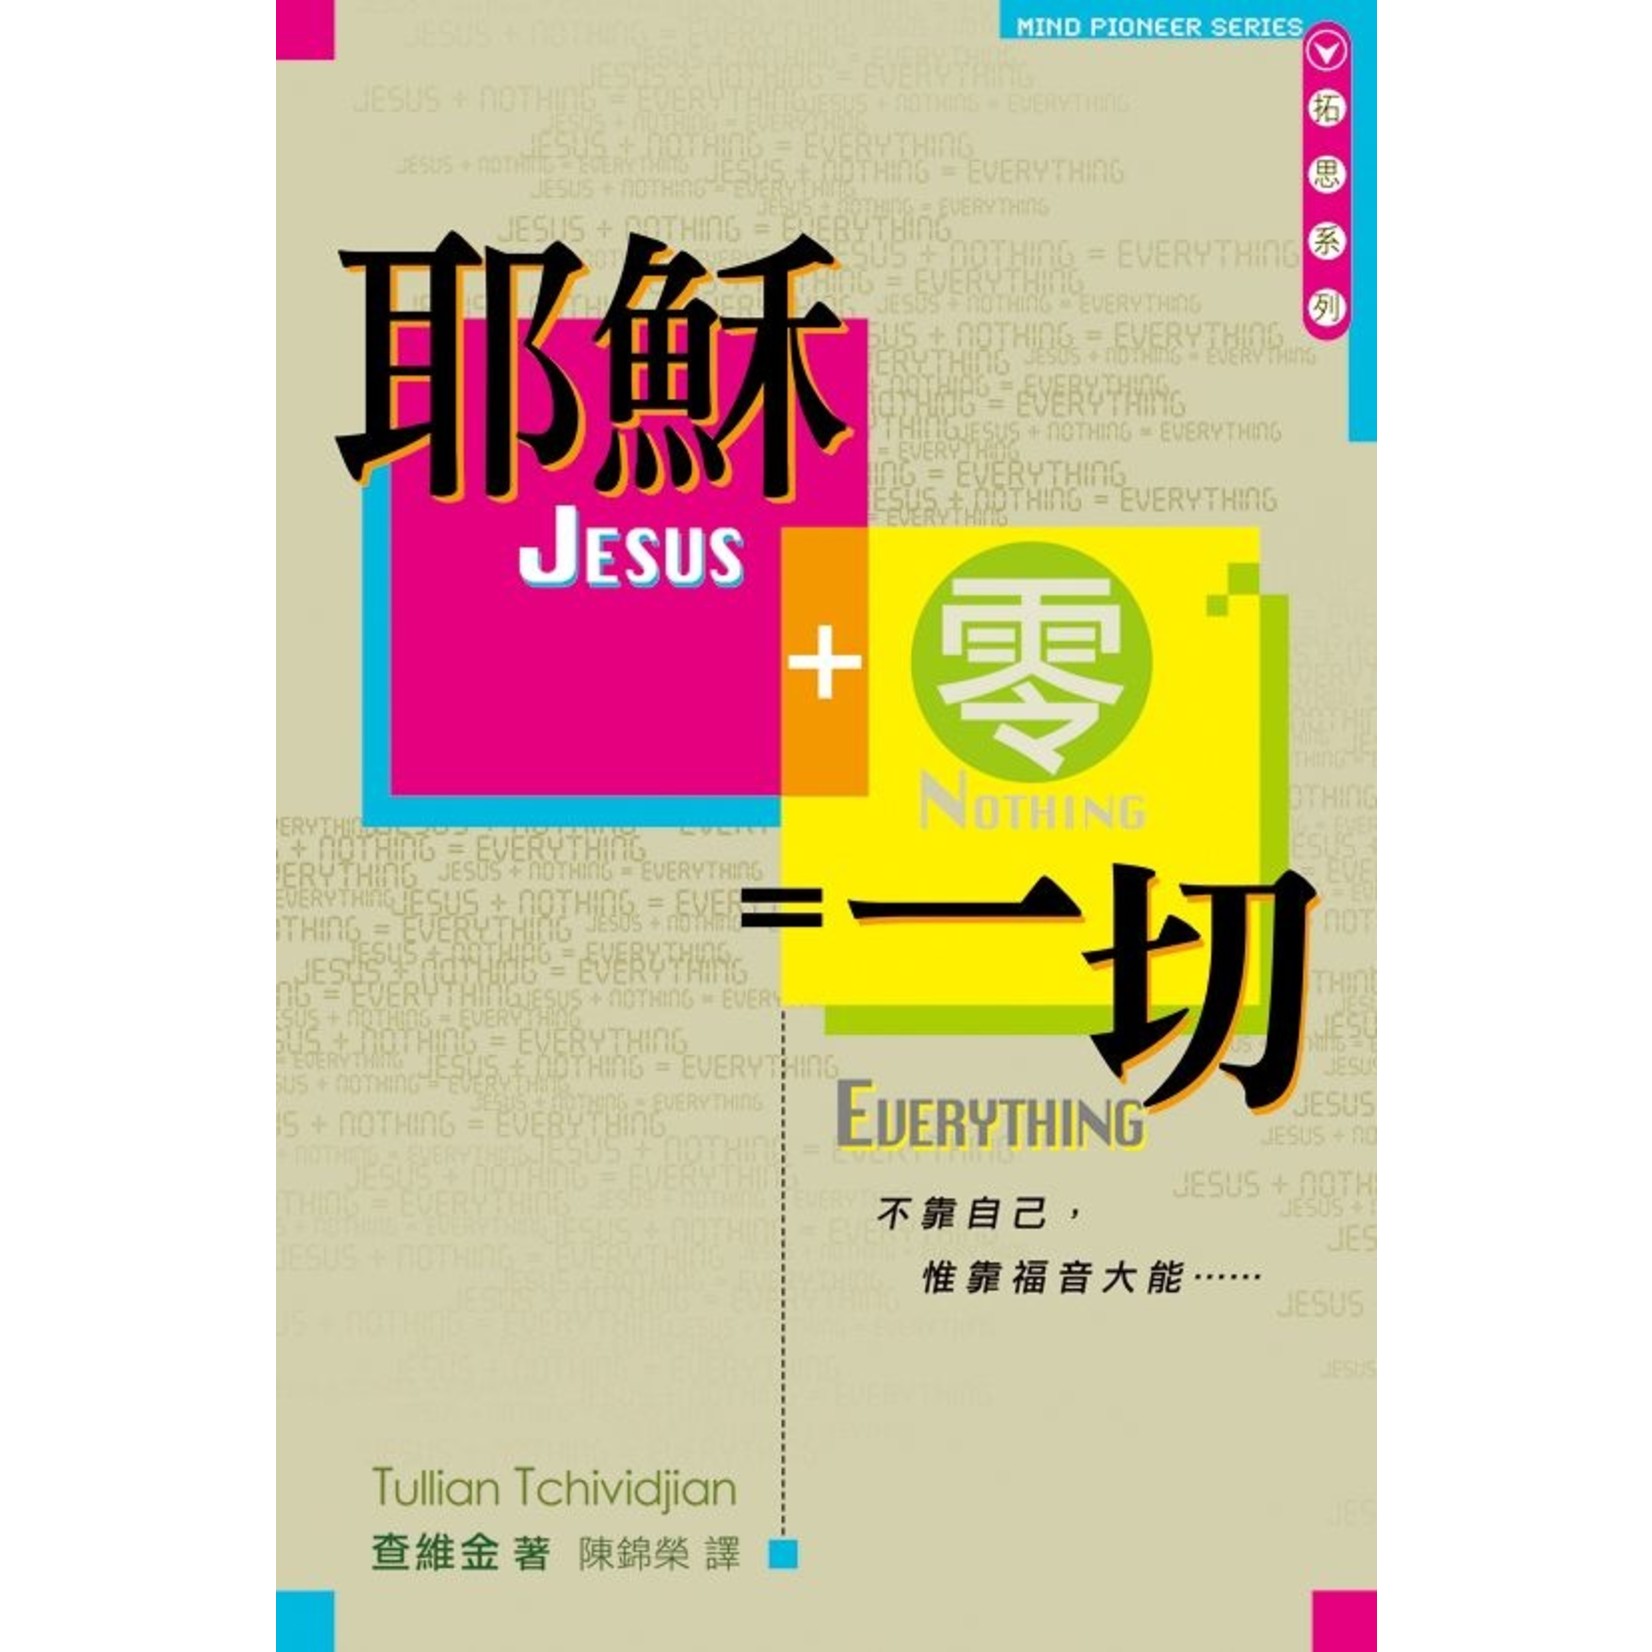 天道書樓 Tien Dao Publishing House 耶穌 ＋ 零 ＝ 一切 | Jesus + Nothing = Everything